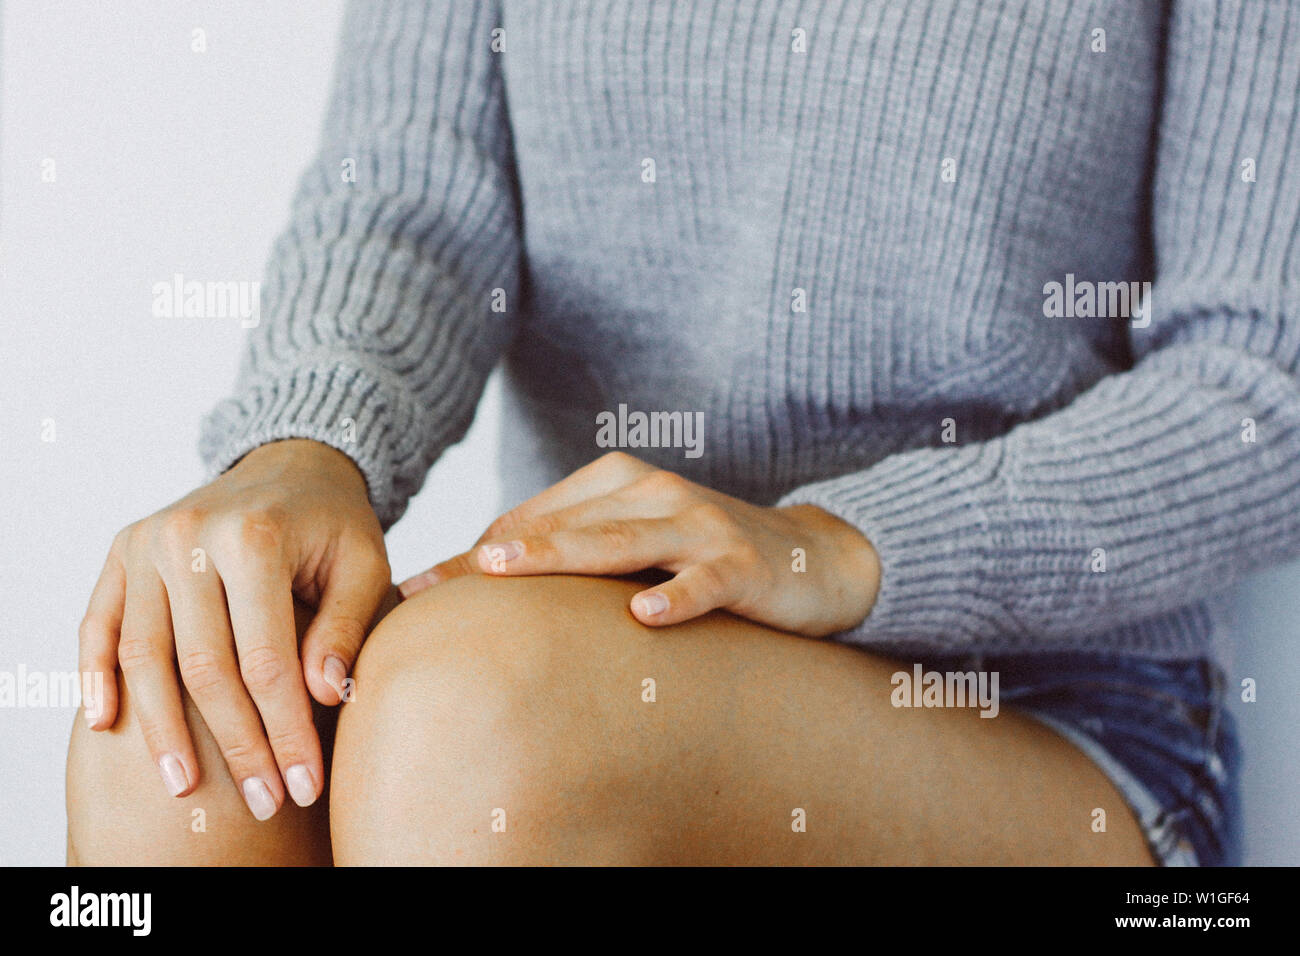 Hände einer jungen Frau auf den Knien, die Hände mit einer ordentlichen Maniküre, eine junge Frau im lässigen Stil Kleidung, ein warmes grau Pullover. Horizontale Farbe Photogra Stockfoto